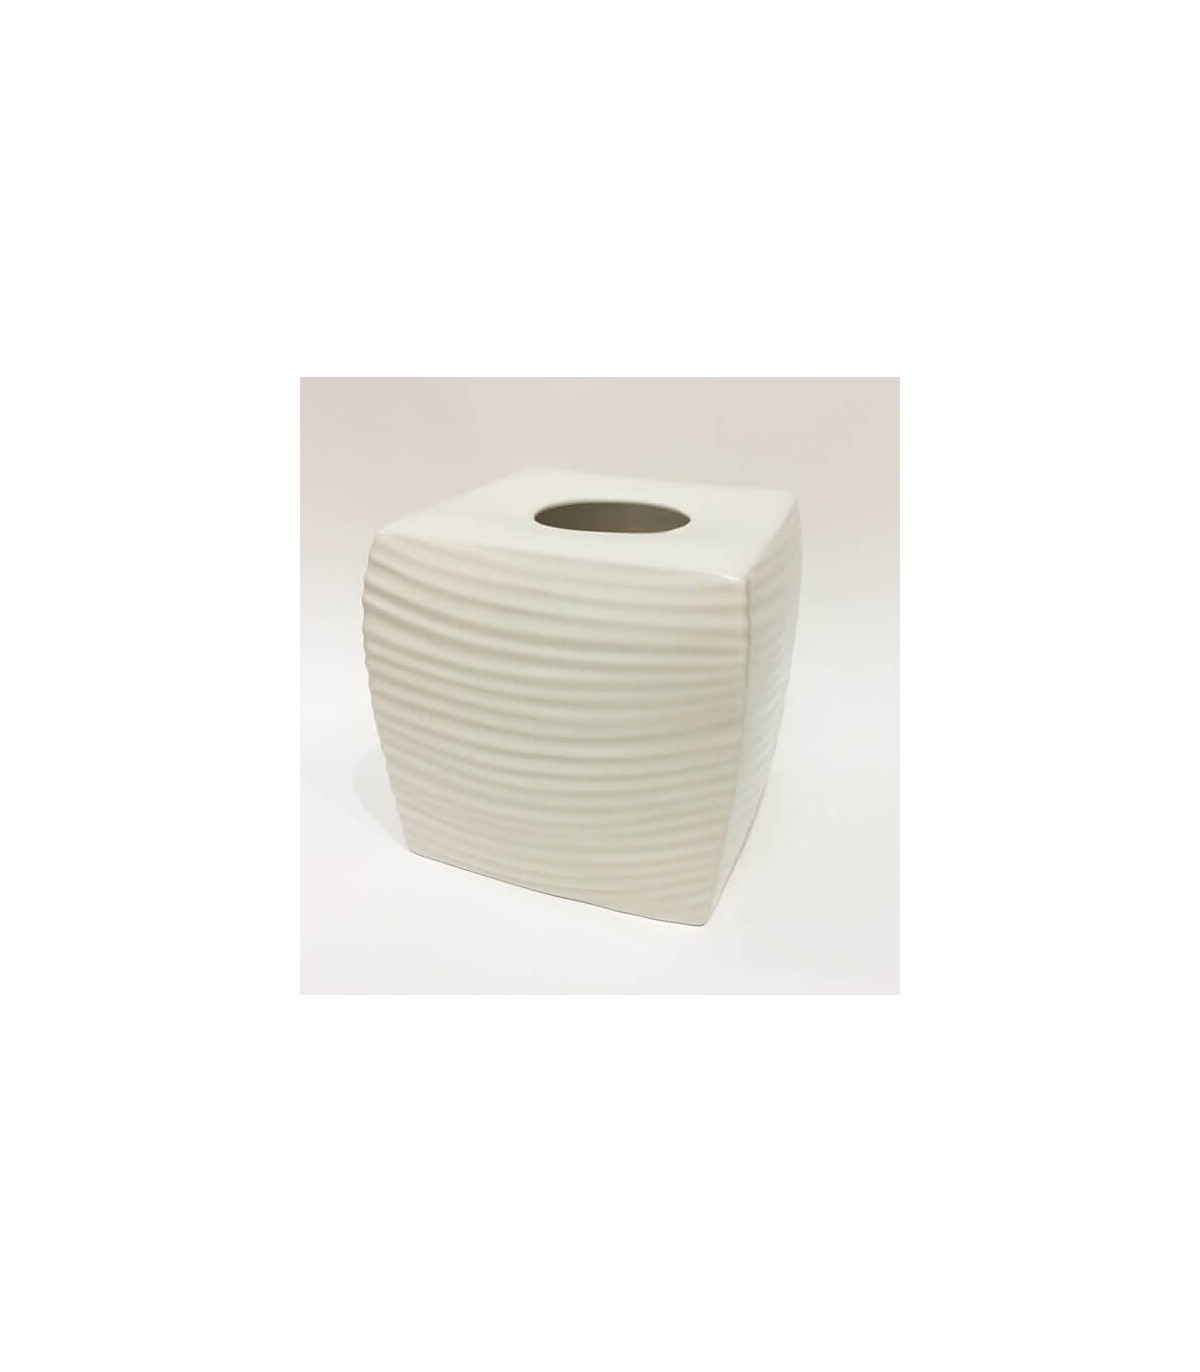 Kassatex Porcelain Tissue Holder